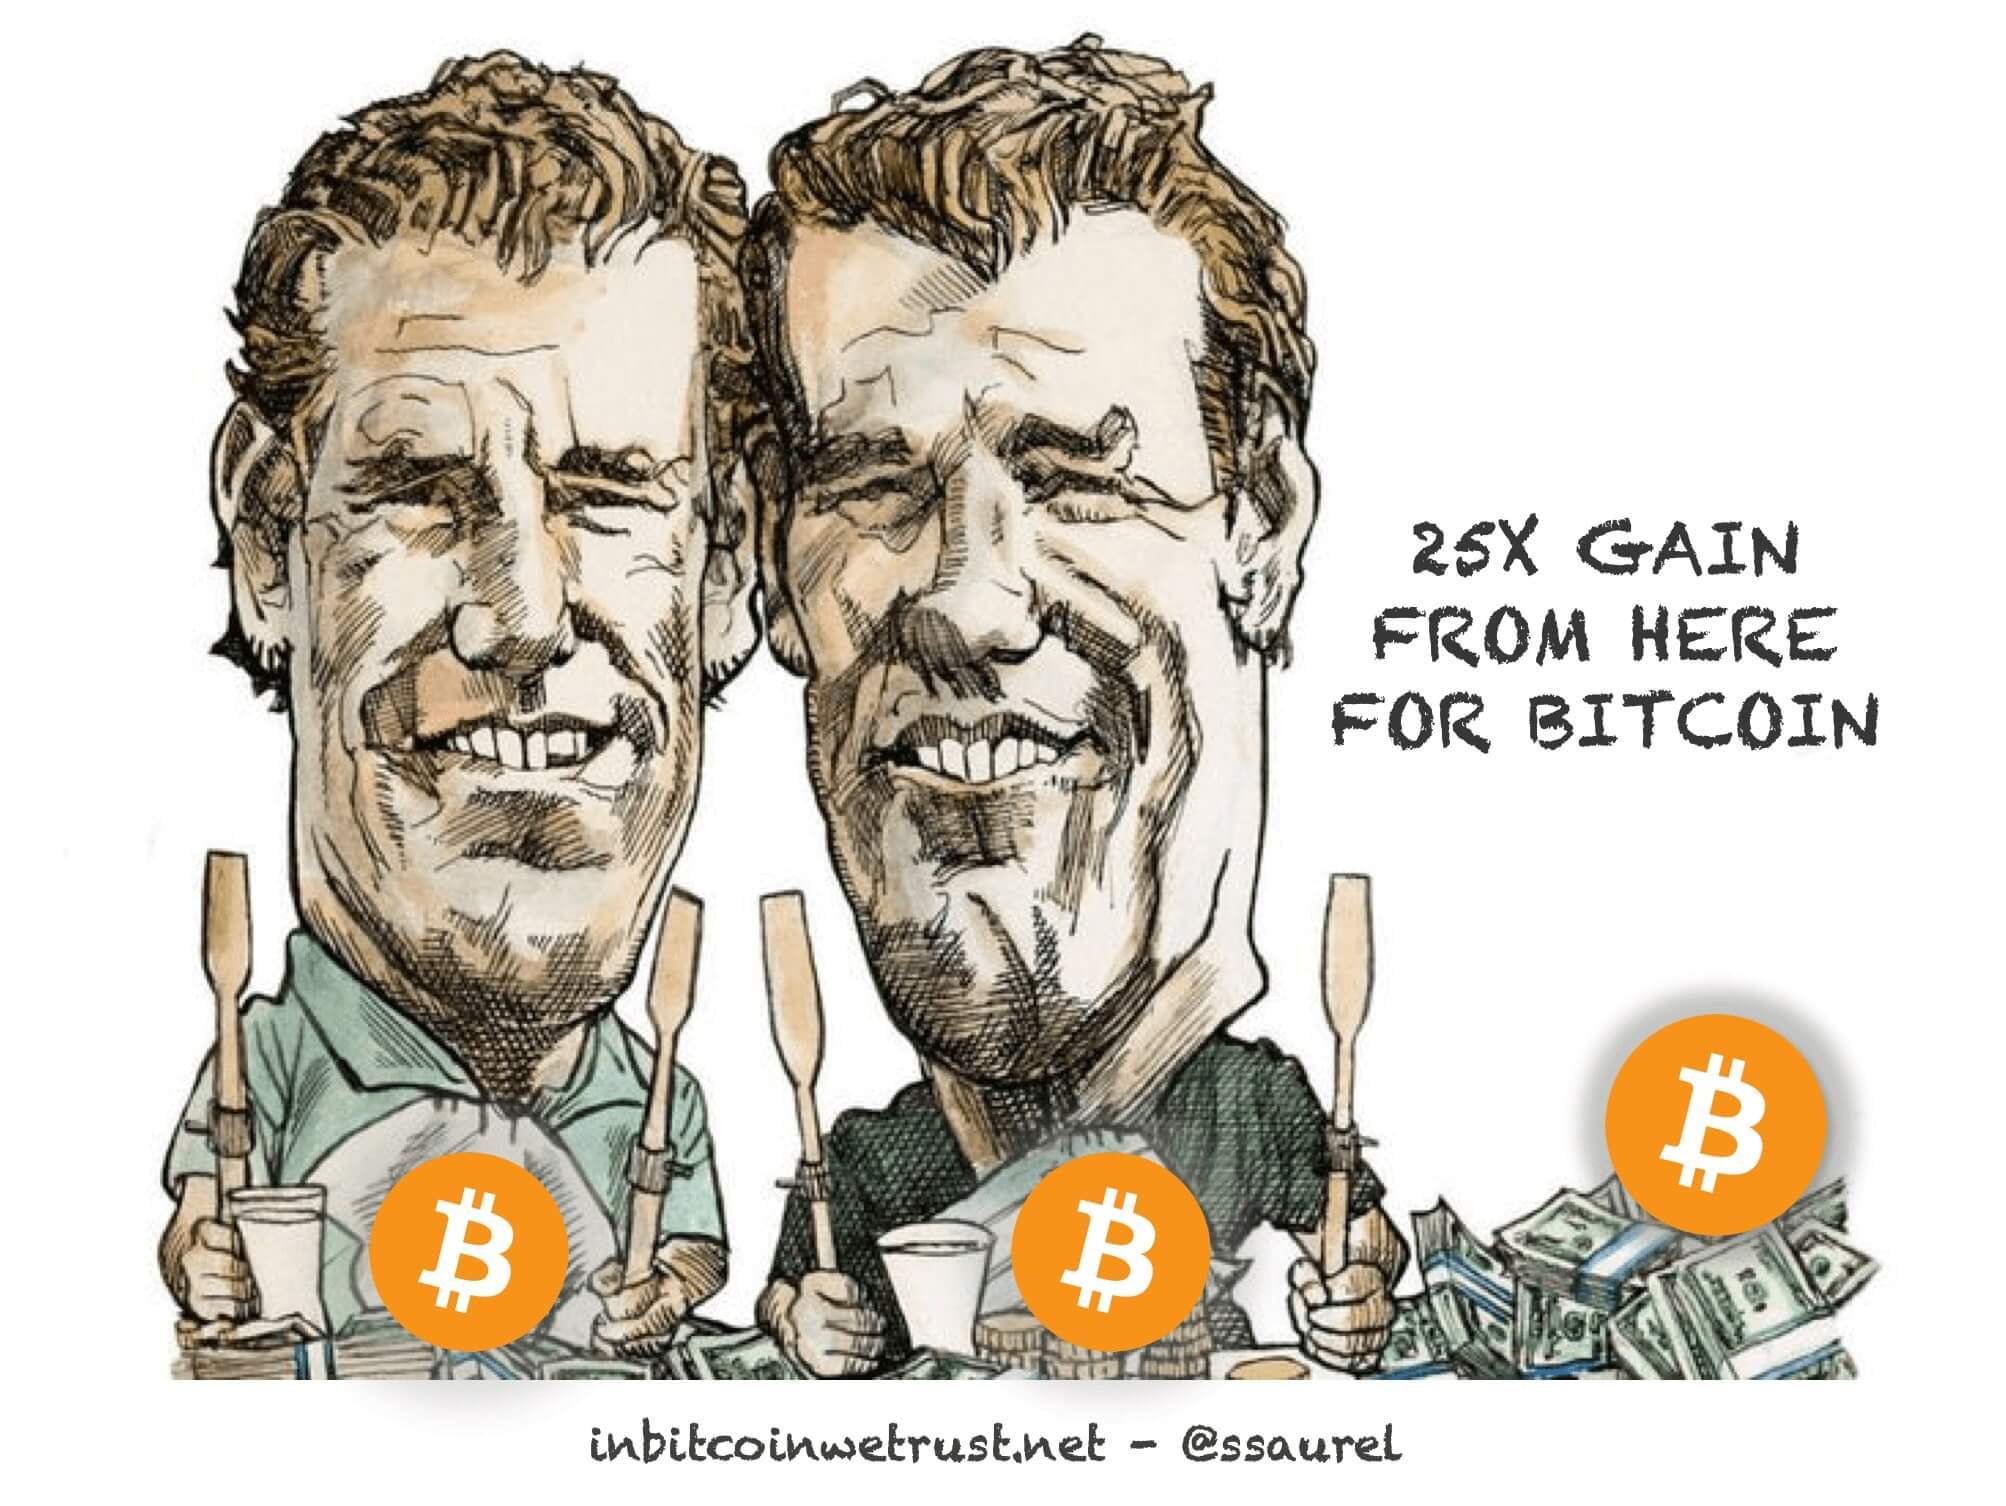 Voici pourquoi les jumeaux Winklevoss s'attendent à un gain de 25x pour Bitcoin au cours de la décennie